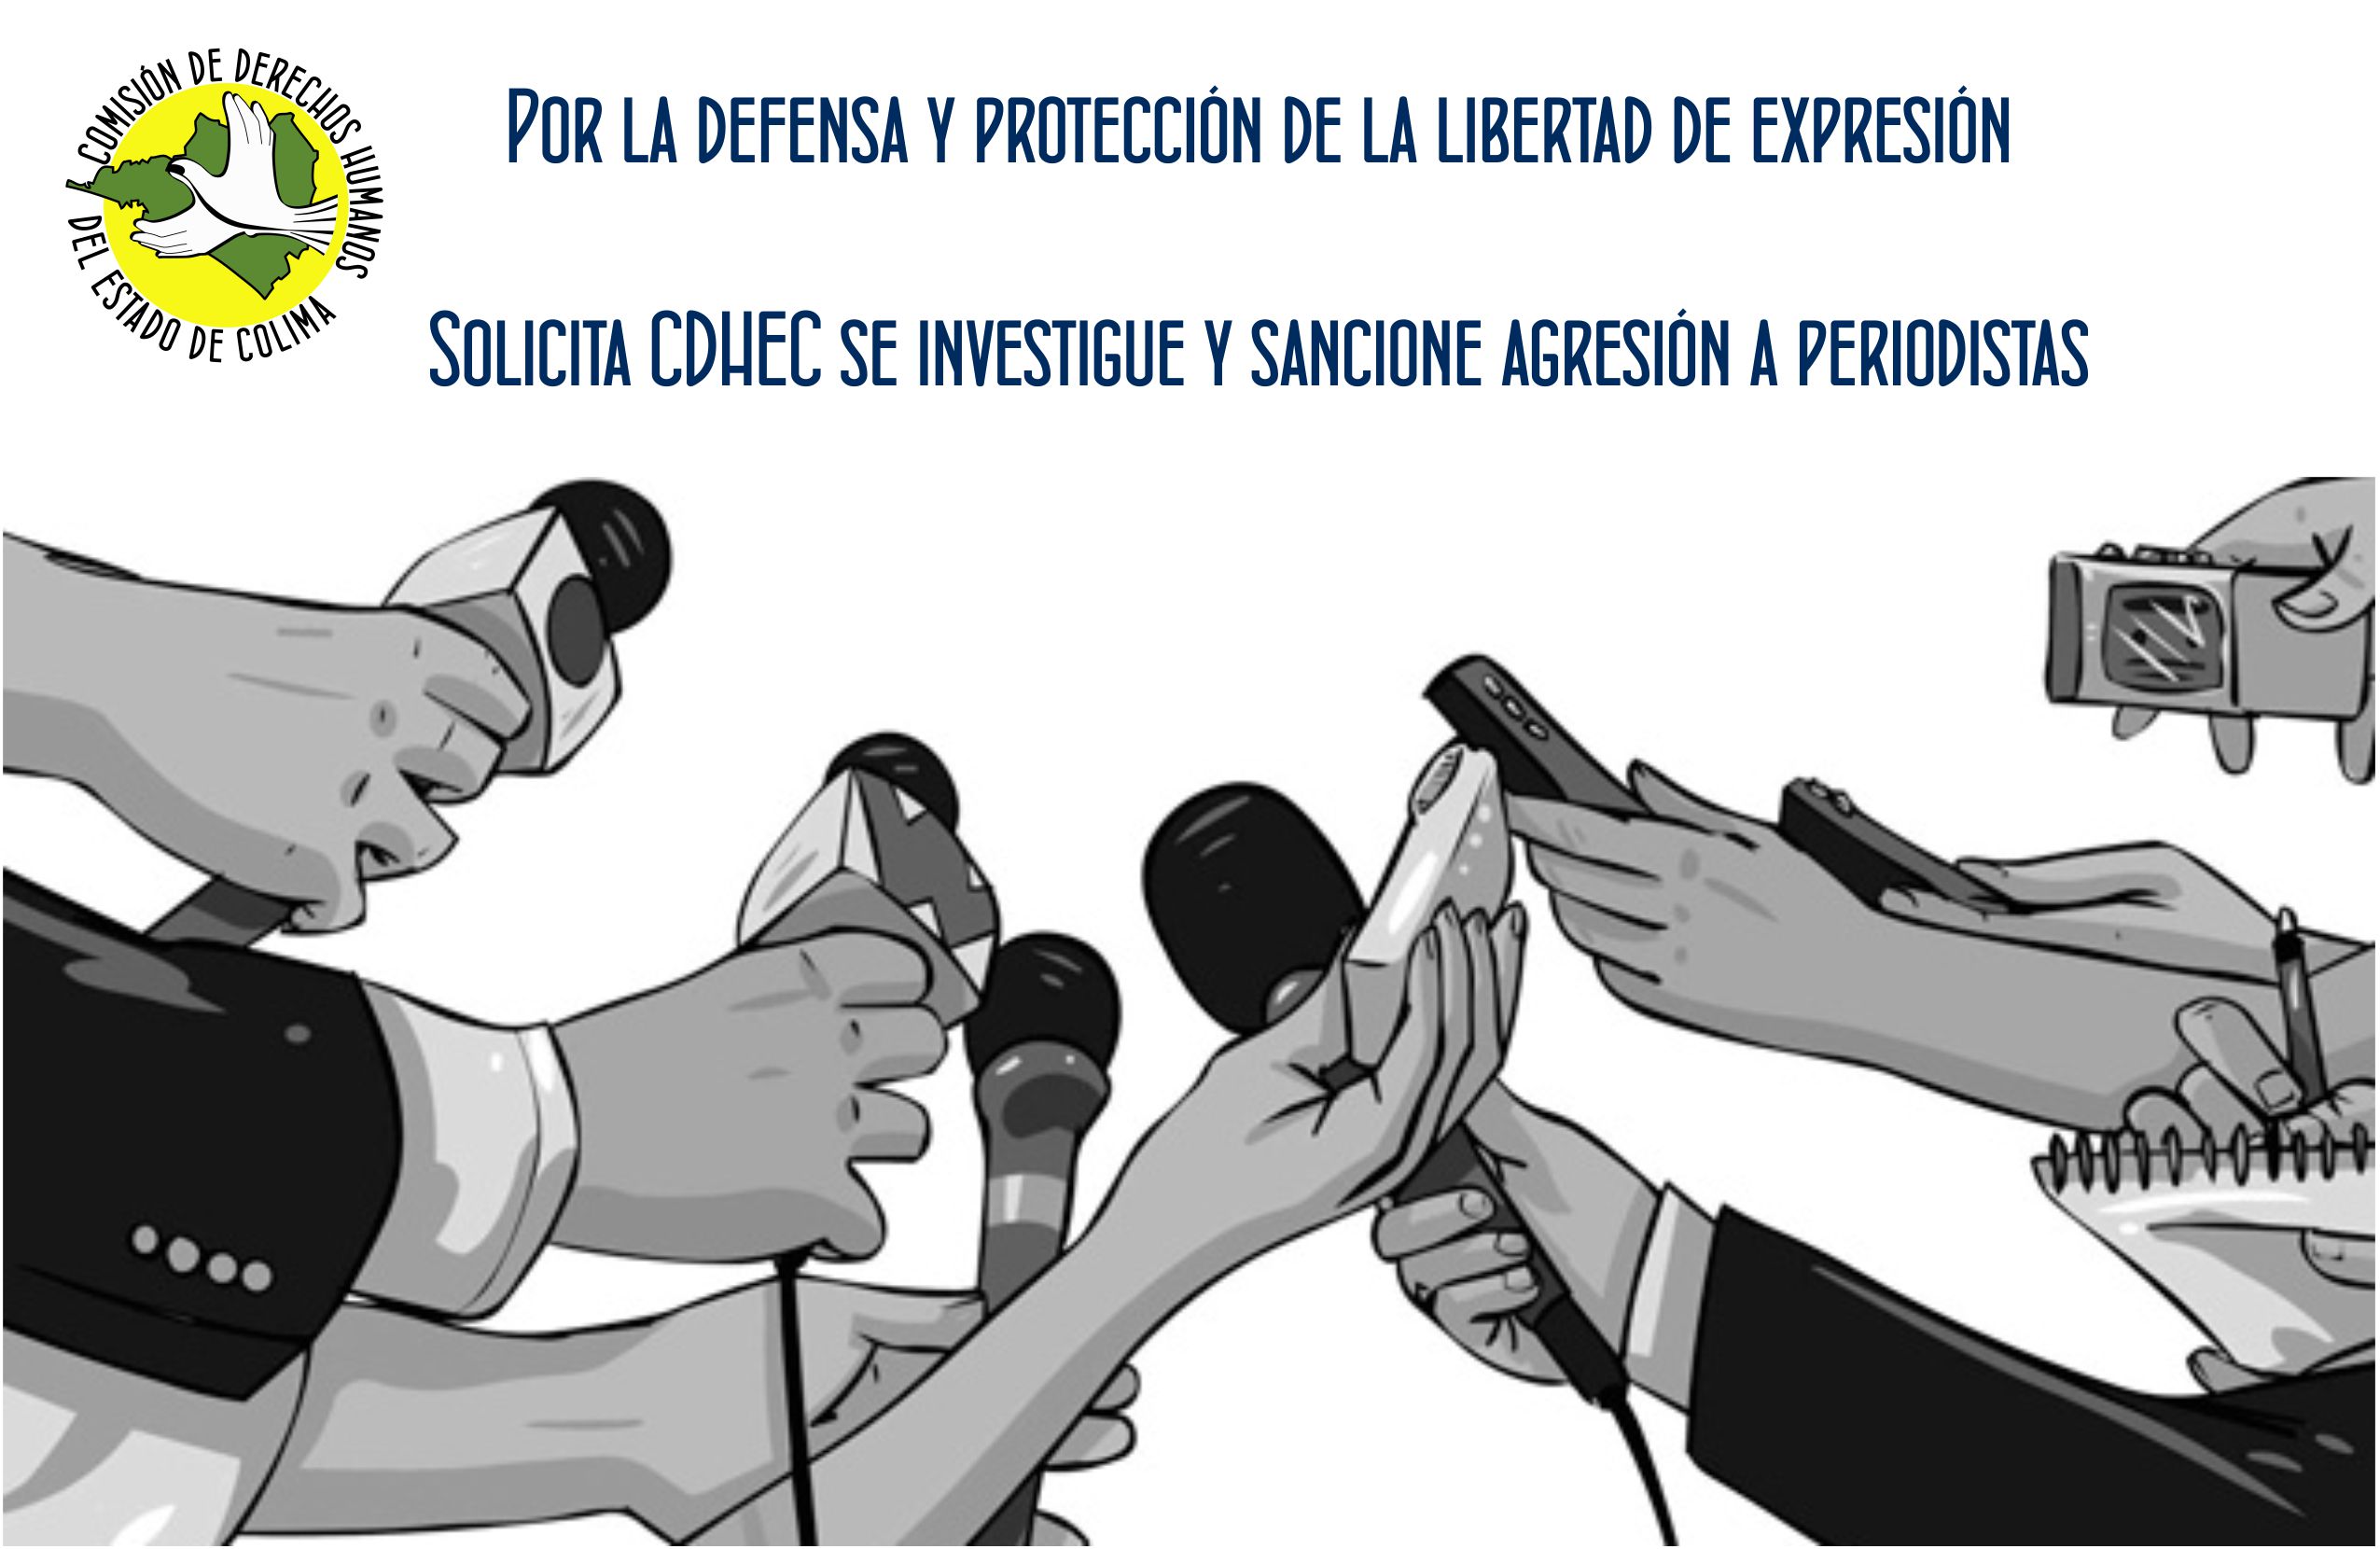 Solicita CDHEC se investigue y sancione agresión a periodistas